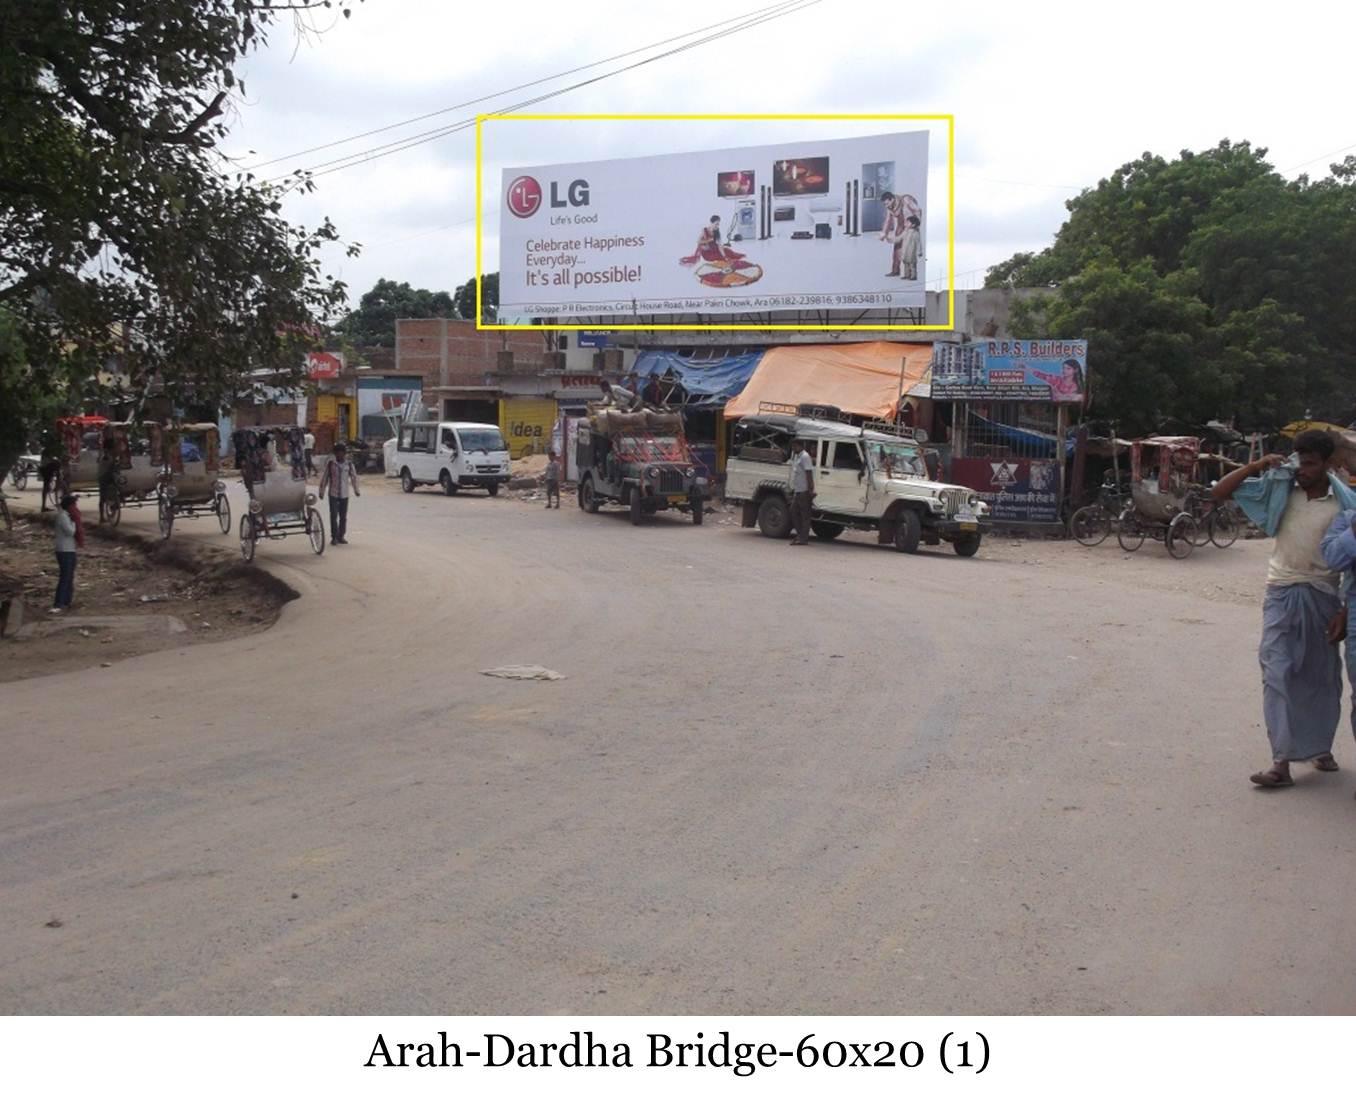 Dardha Bridge, Arrah